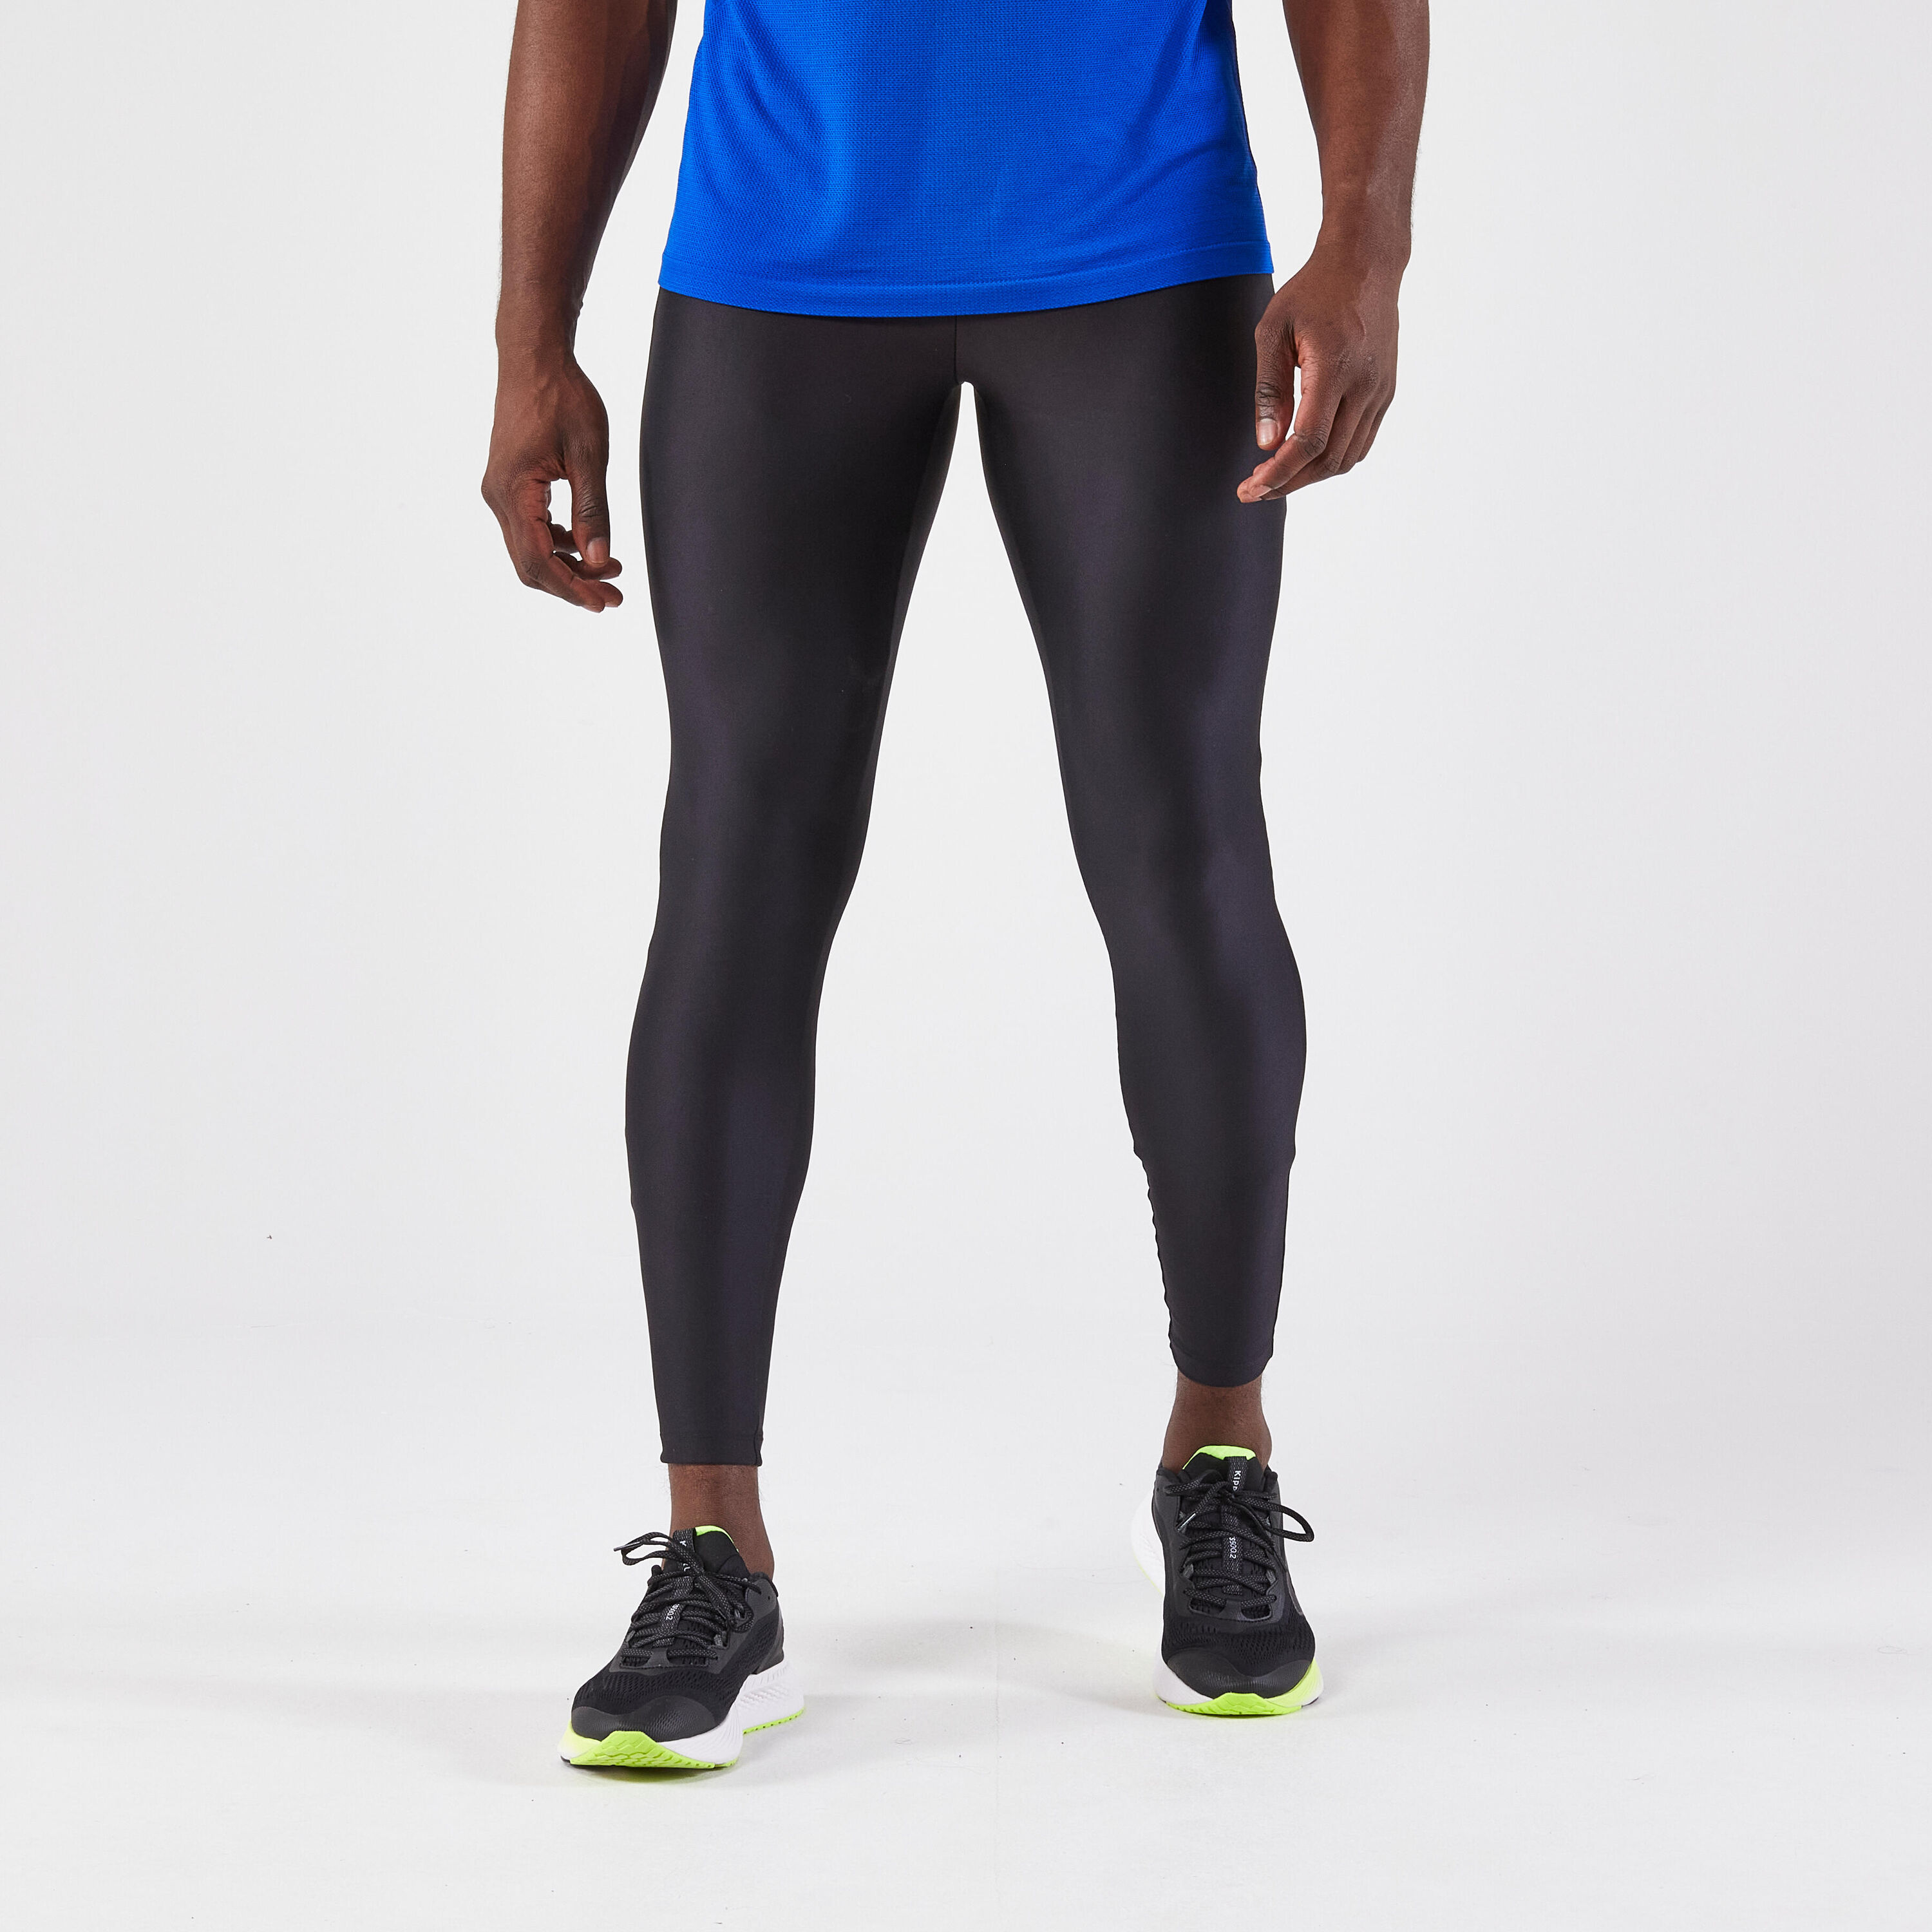 WOMEN'S 3/4 TRAIL RUNNING LEGGINGS EMBOSS - BLACK/BRONZE - Decathlon